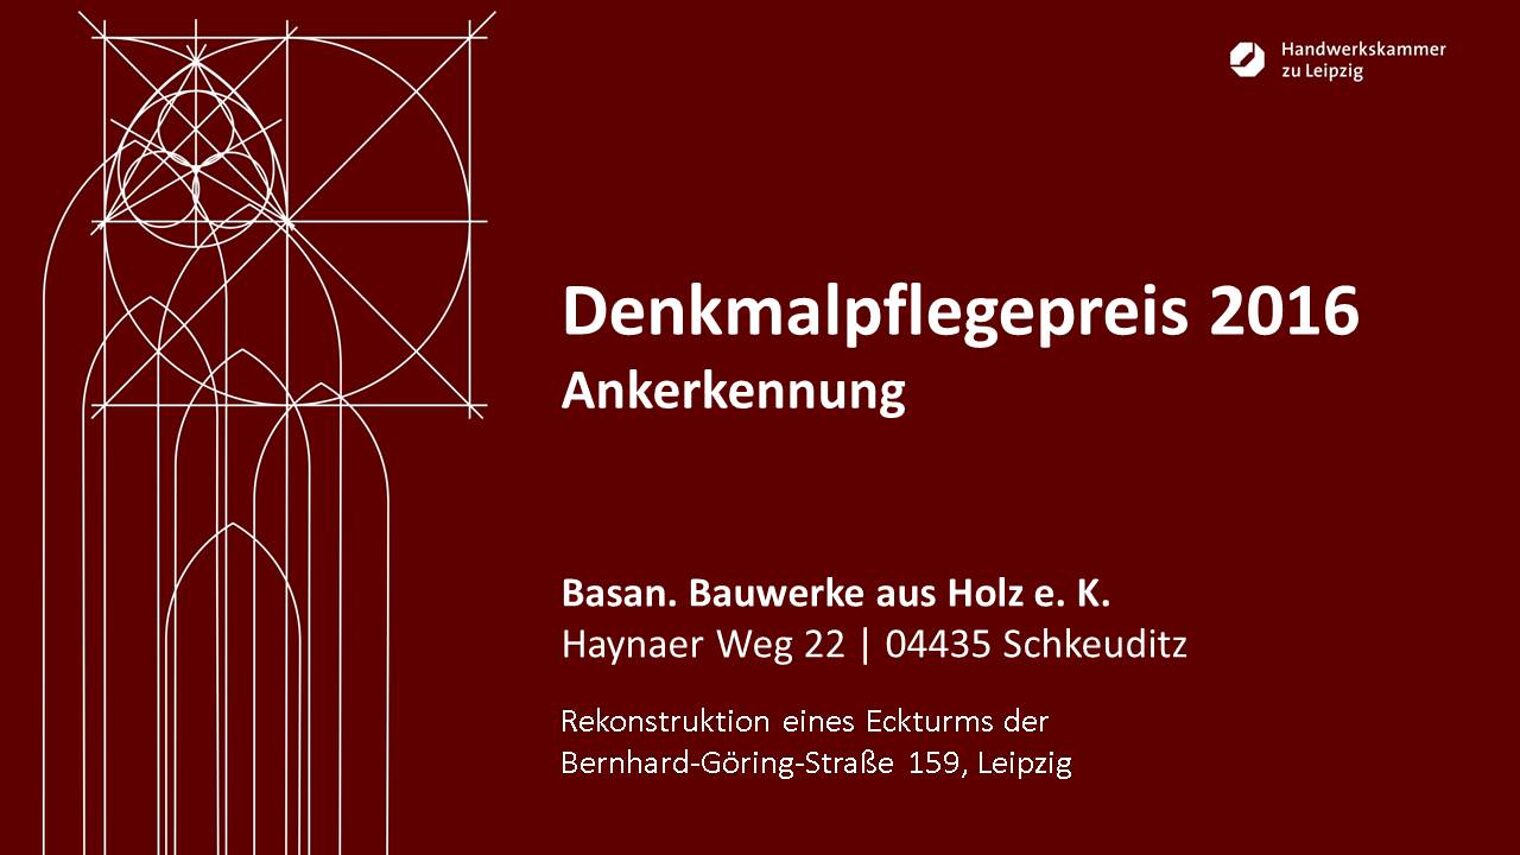 Basan. Bauwerke aus Holz e.K.: Rekonstruktion eines Eckturms der Bernhard-Göring-Str. 159, Leipzig. 